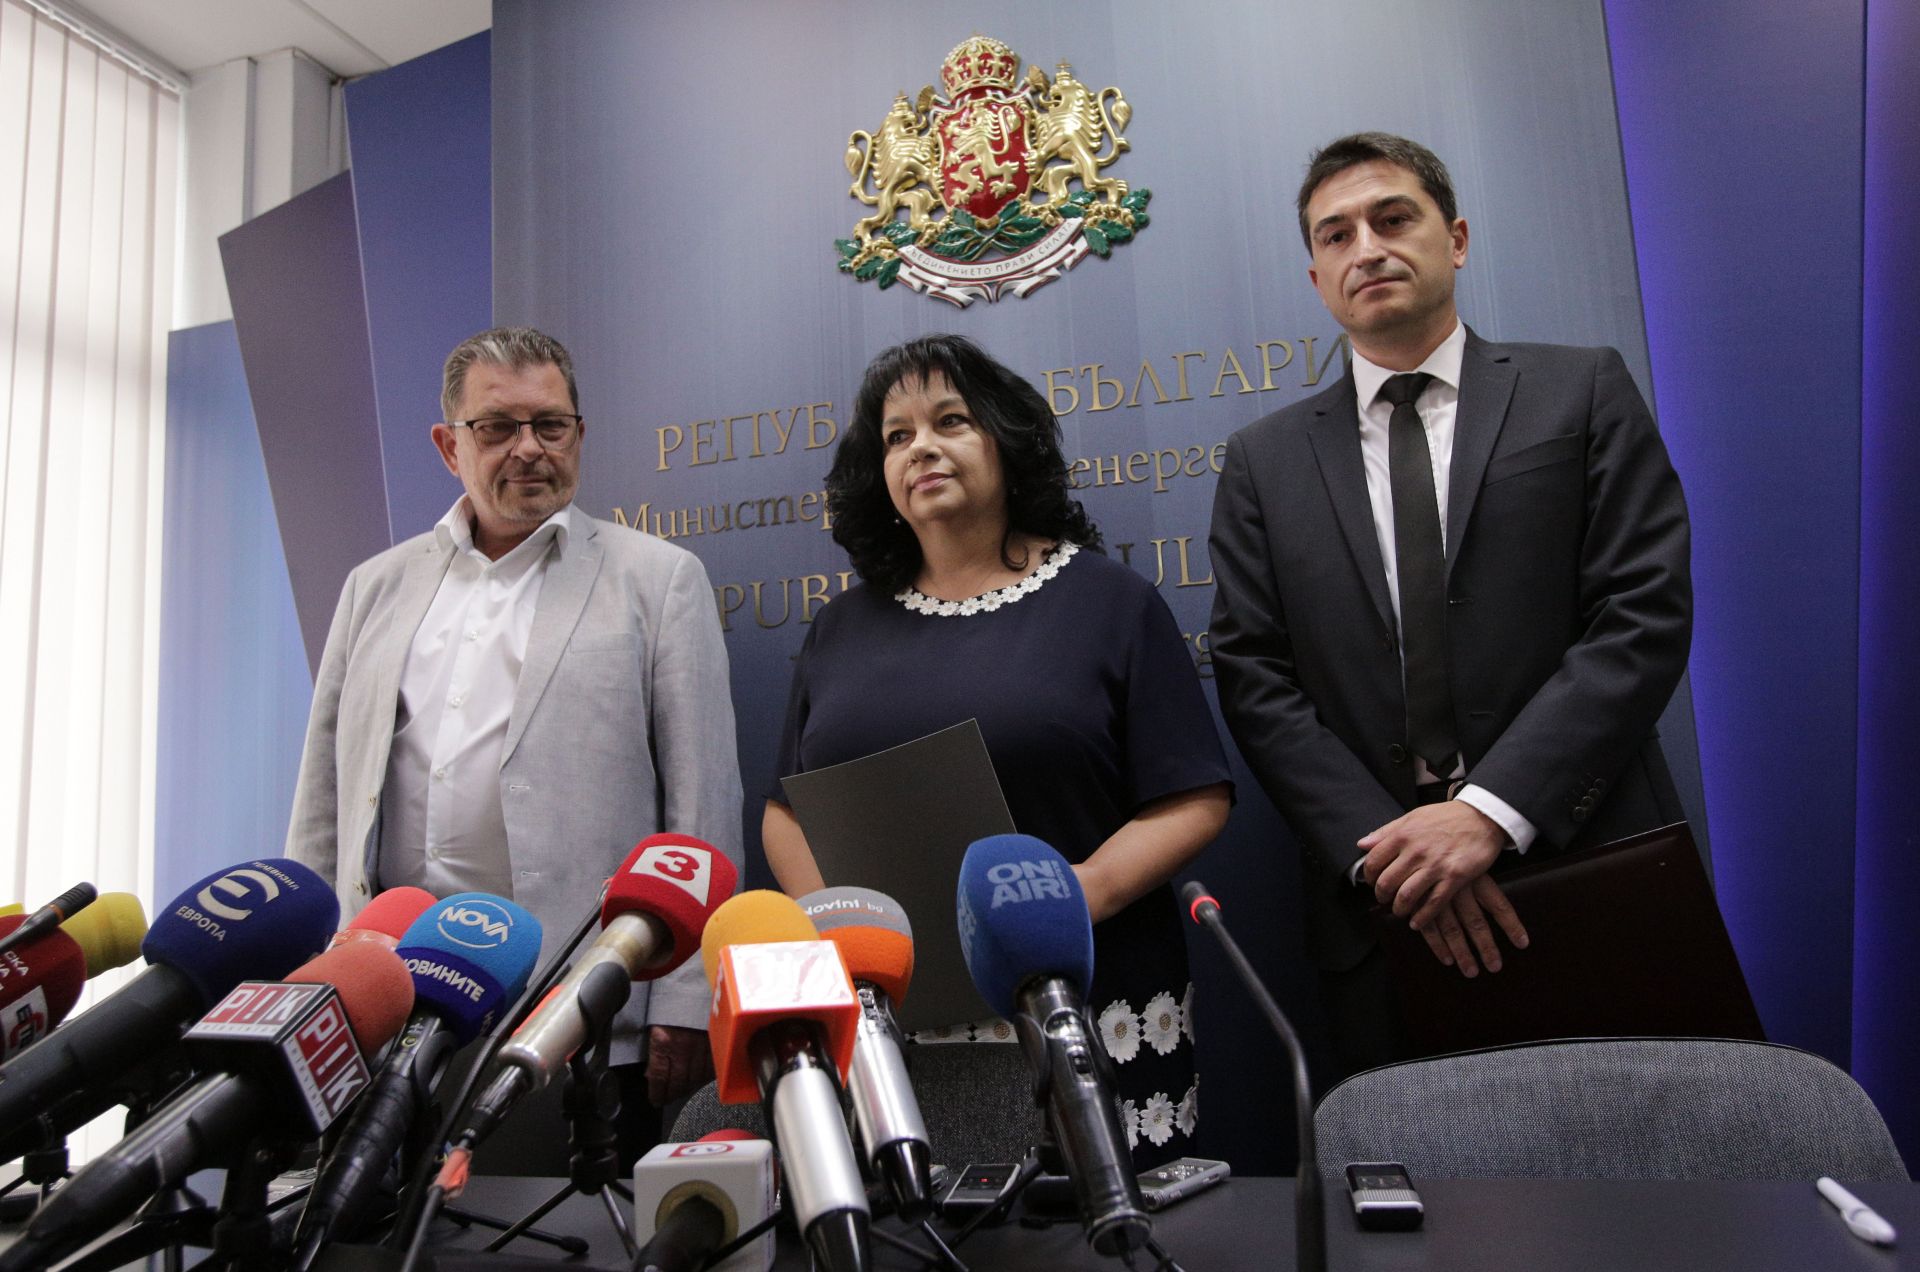 Министърът на енергетиката Теменужка Петкова обяви кандидатите, подали заявления в процедурата за избор на стратегически инвеститор за АЕЦ "Белене". На пресконференцията присъстваха и изпълнителните директори на "Български енергиен холдинг" ЕАД Жаклен Кое